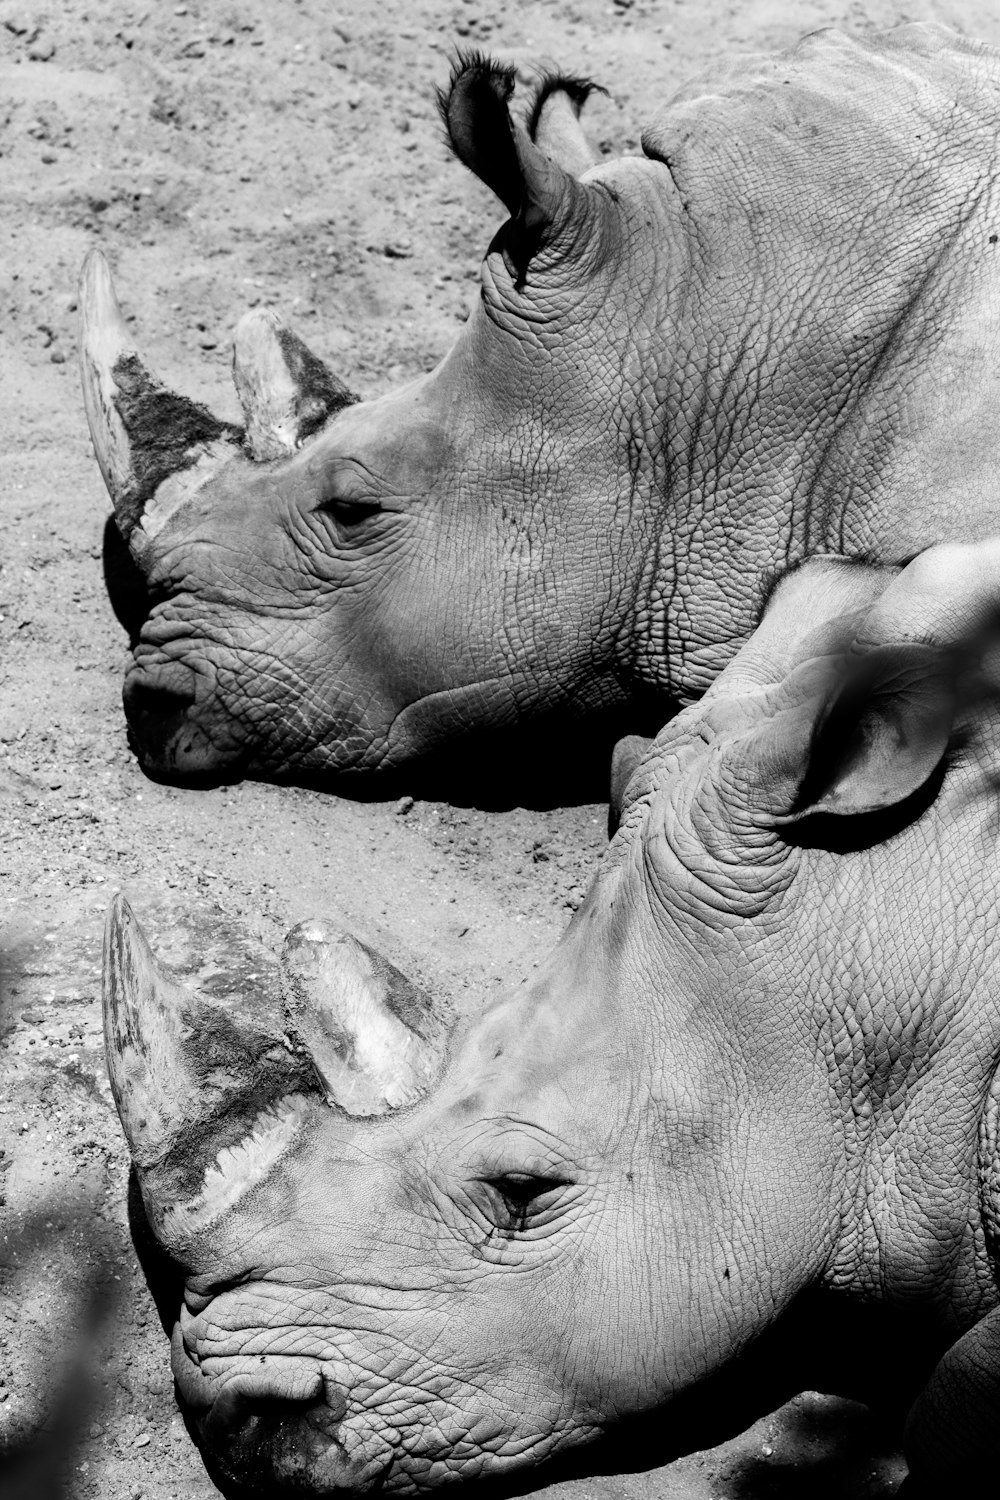 fotografia em tons de cinza de dois rinocerontes